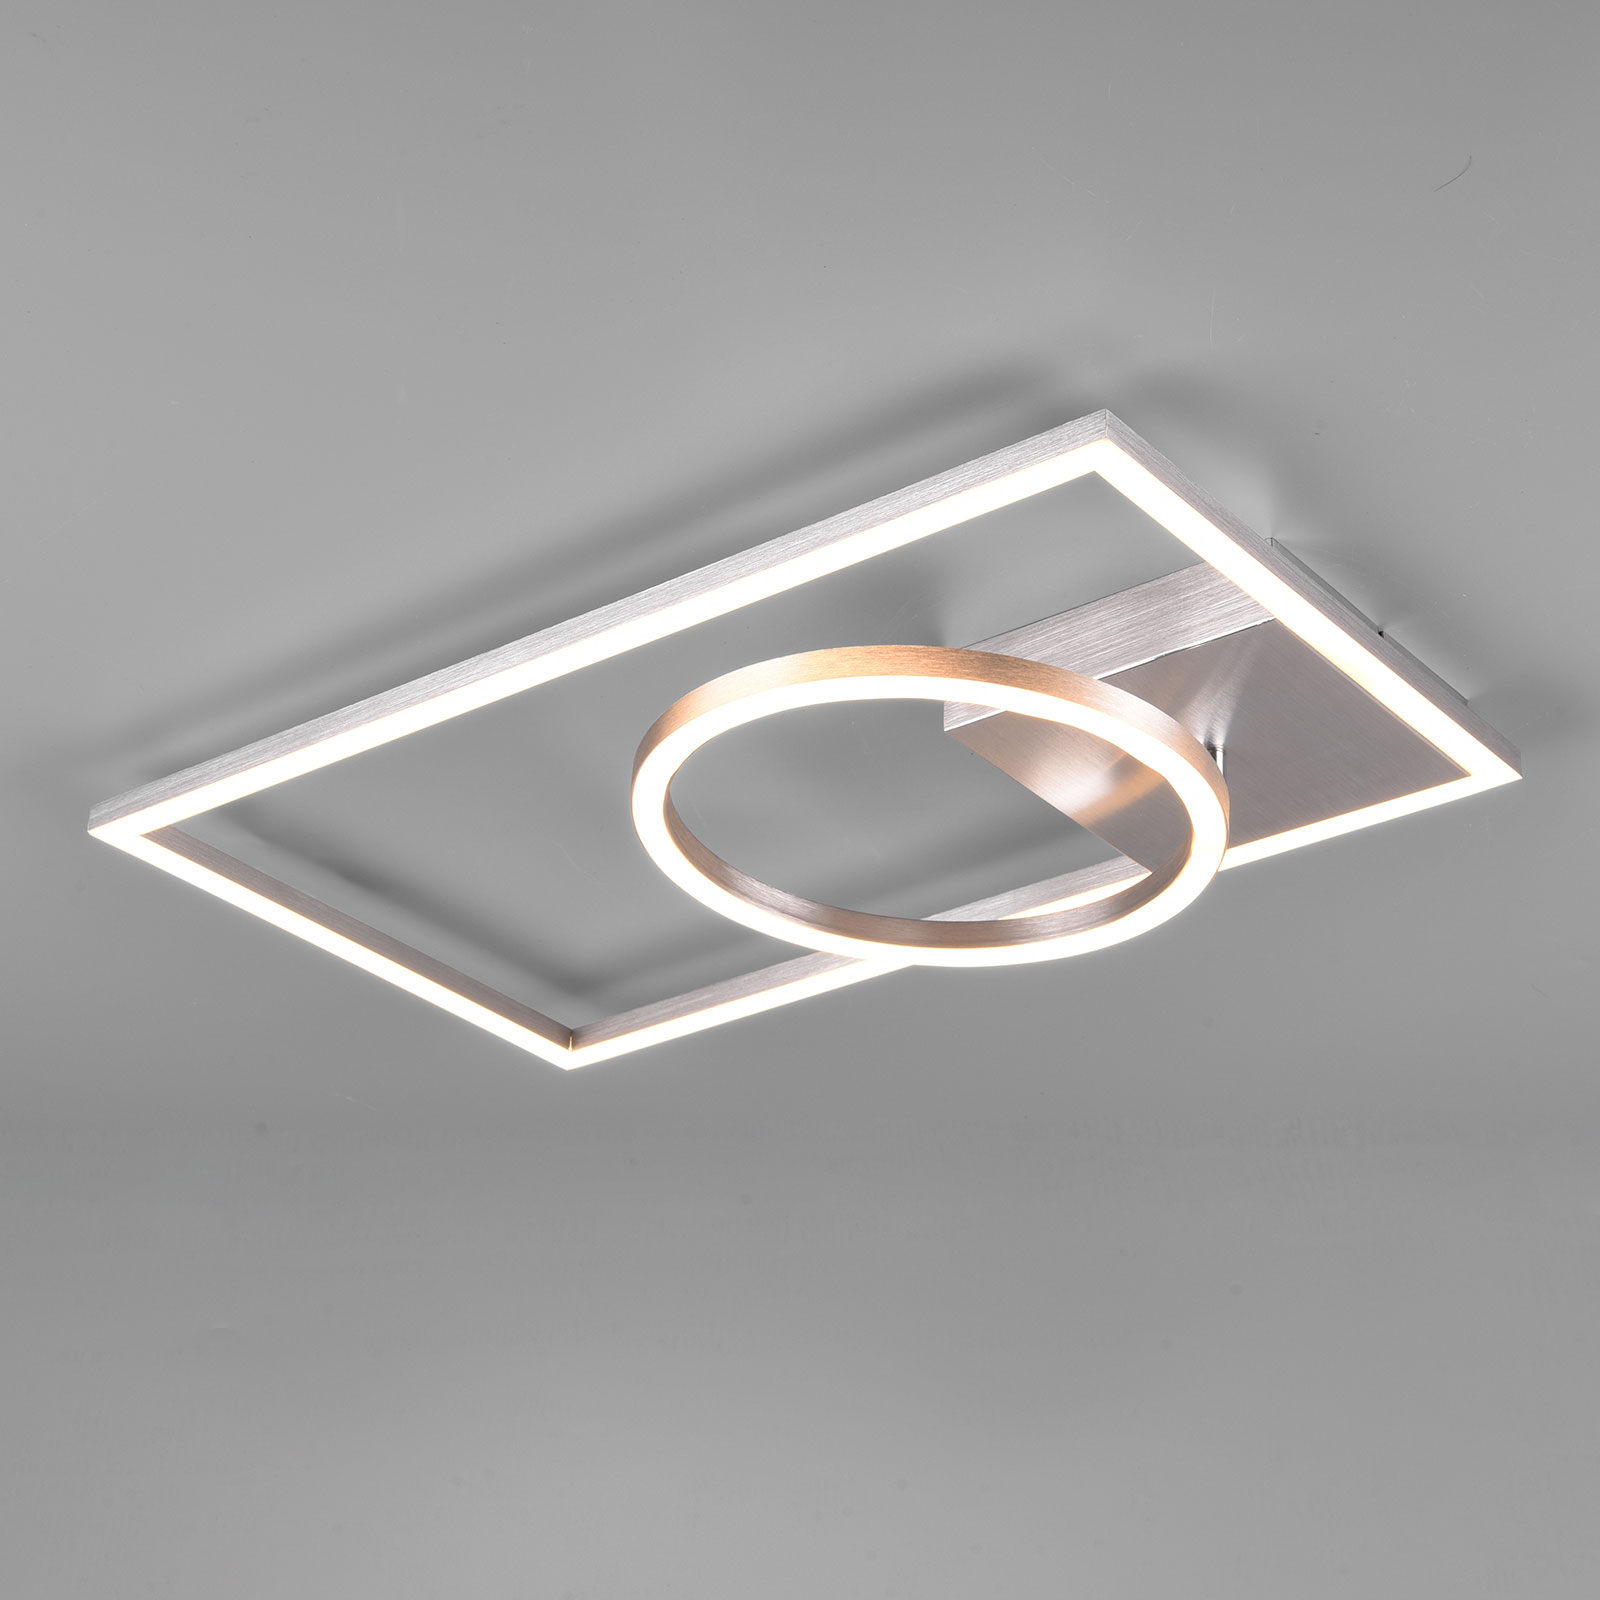 Lampa sufitowa LED Verso, 3 000 K, aluminium